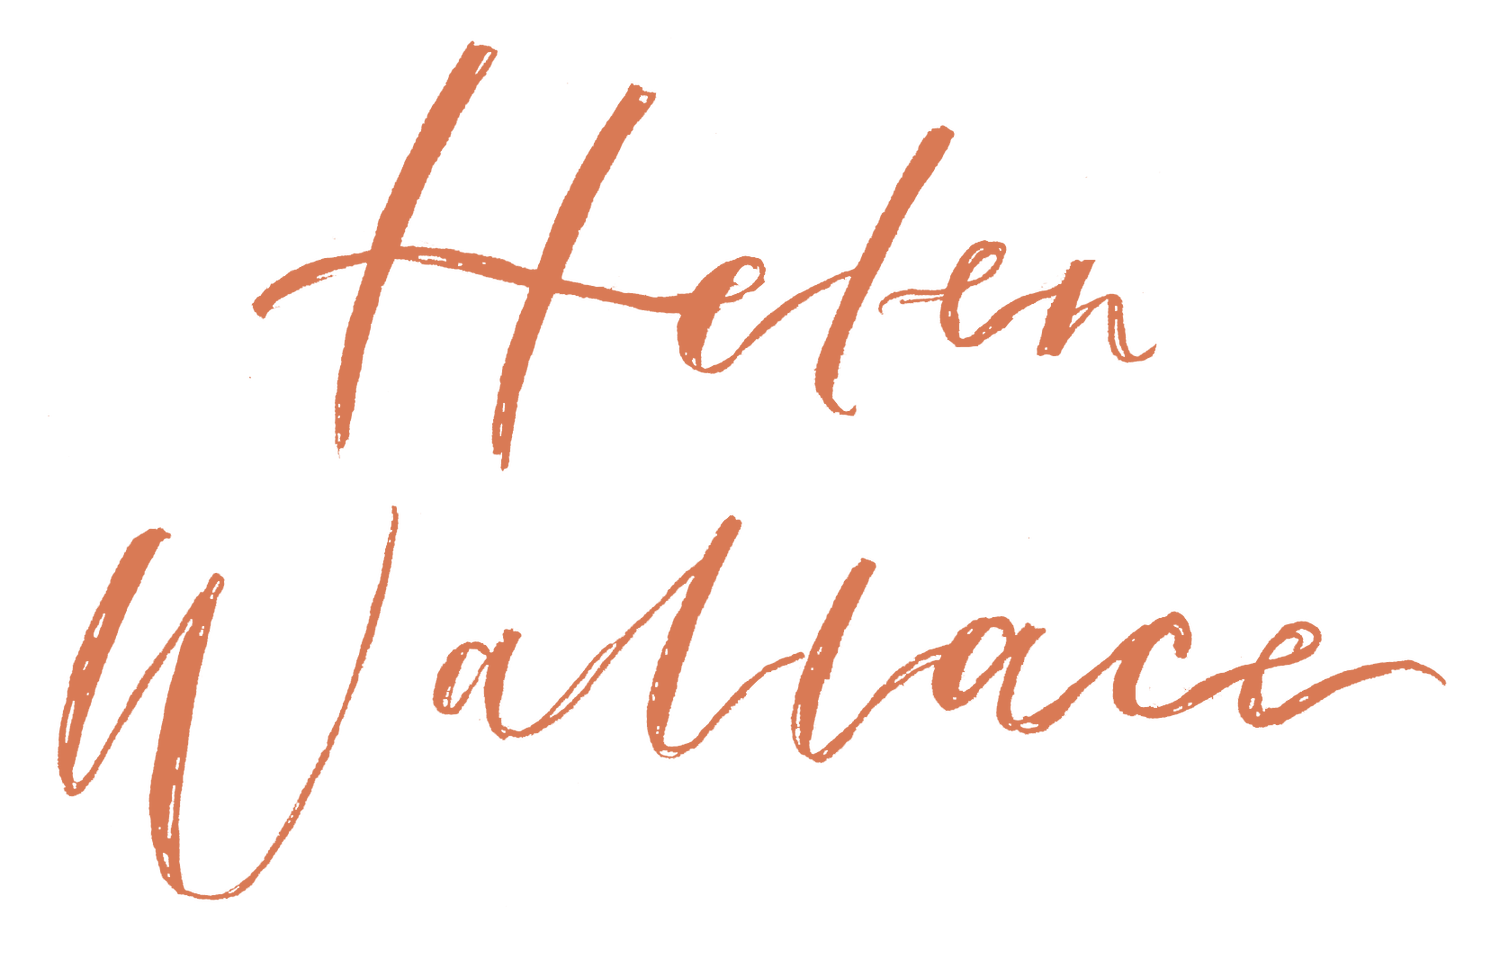 Helen Wallace